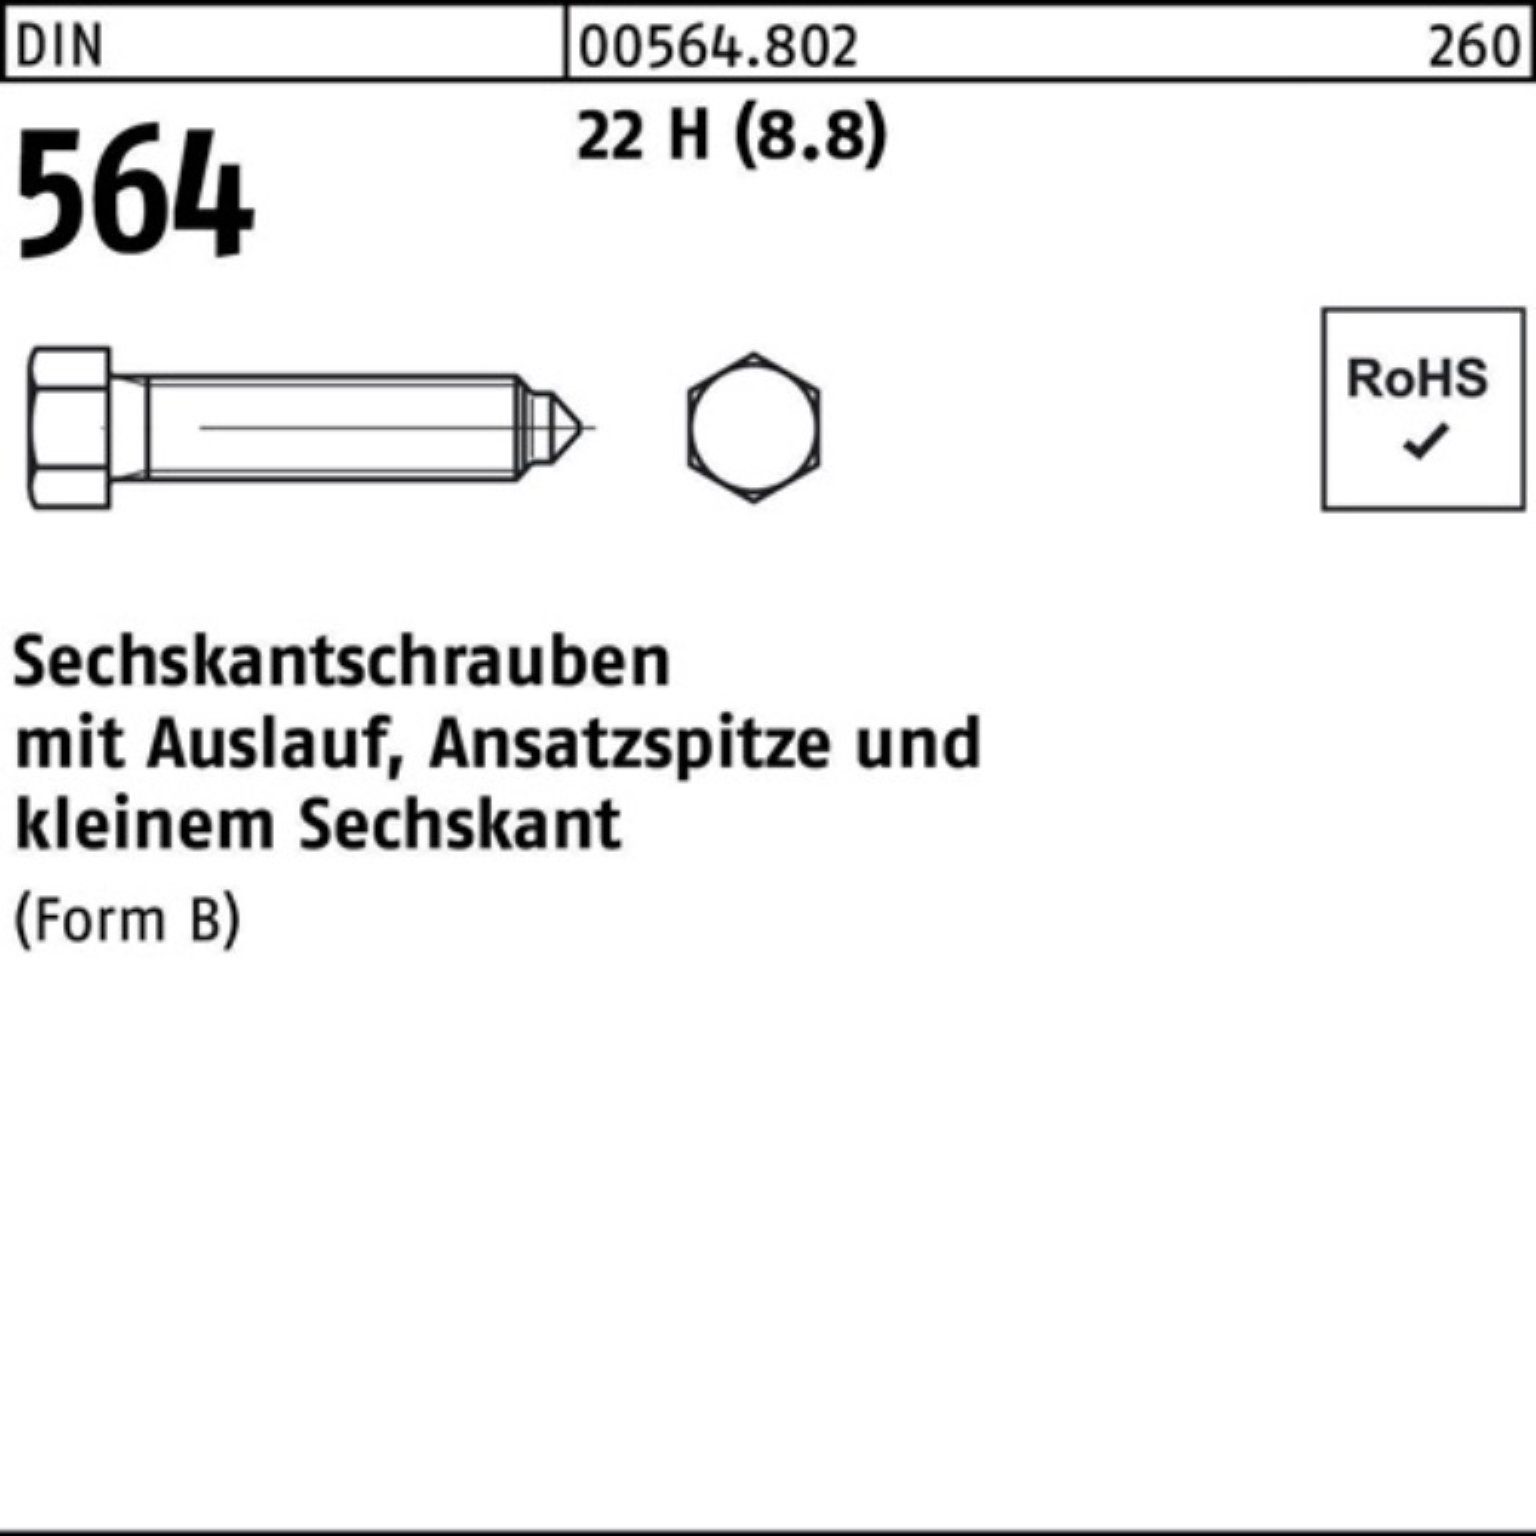 Reyher Sechskantschraube 100er Pack Sechskantschraube DIN 564 Ansatzspitze/Auslauf BM 20x 100 2